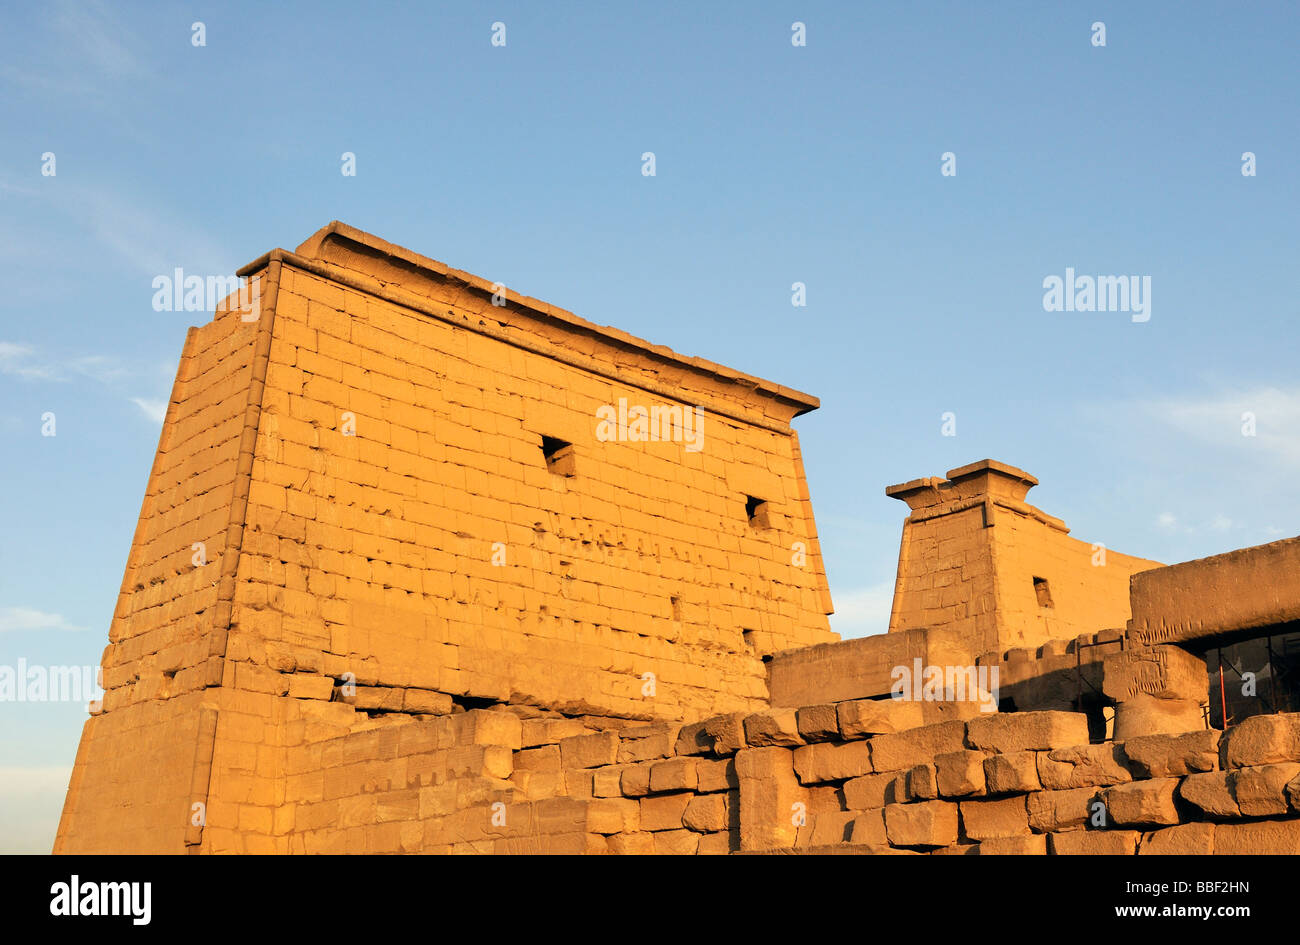 Premier pylône du temple de Louxor de Thèbes en Égypte Banque D'Images